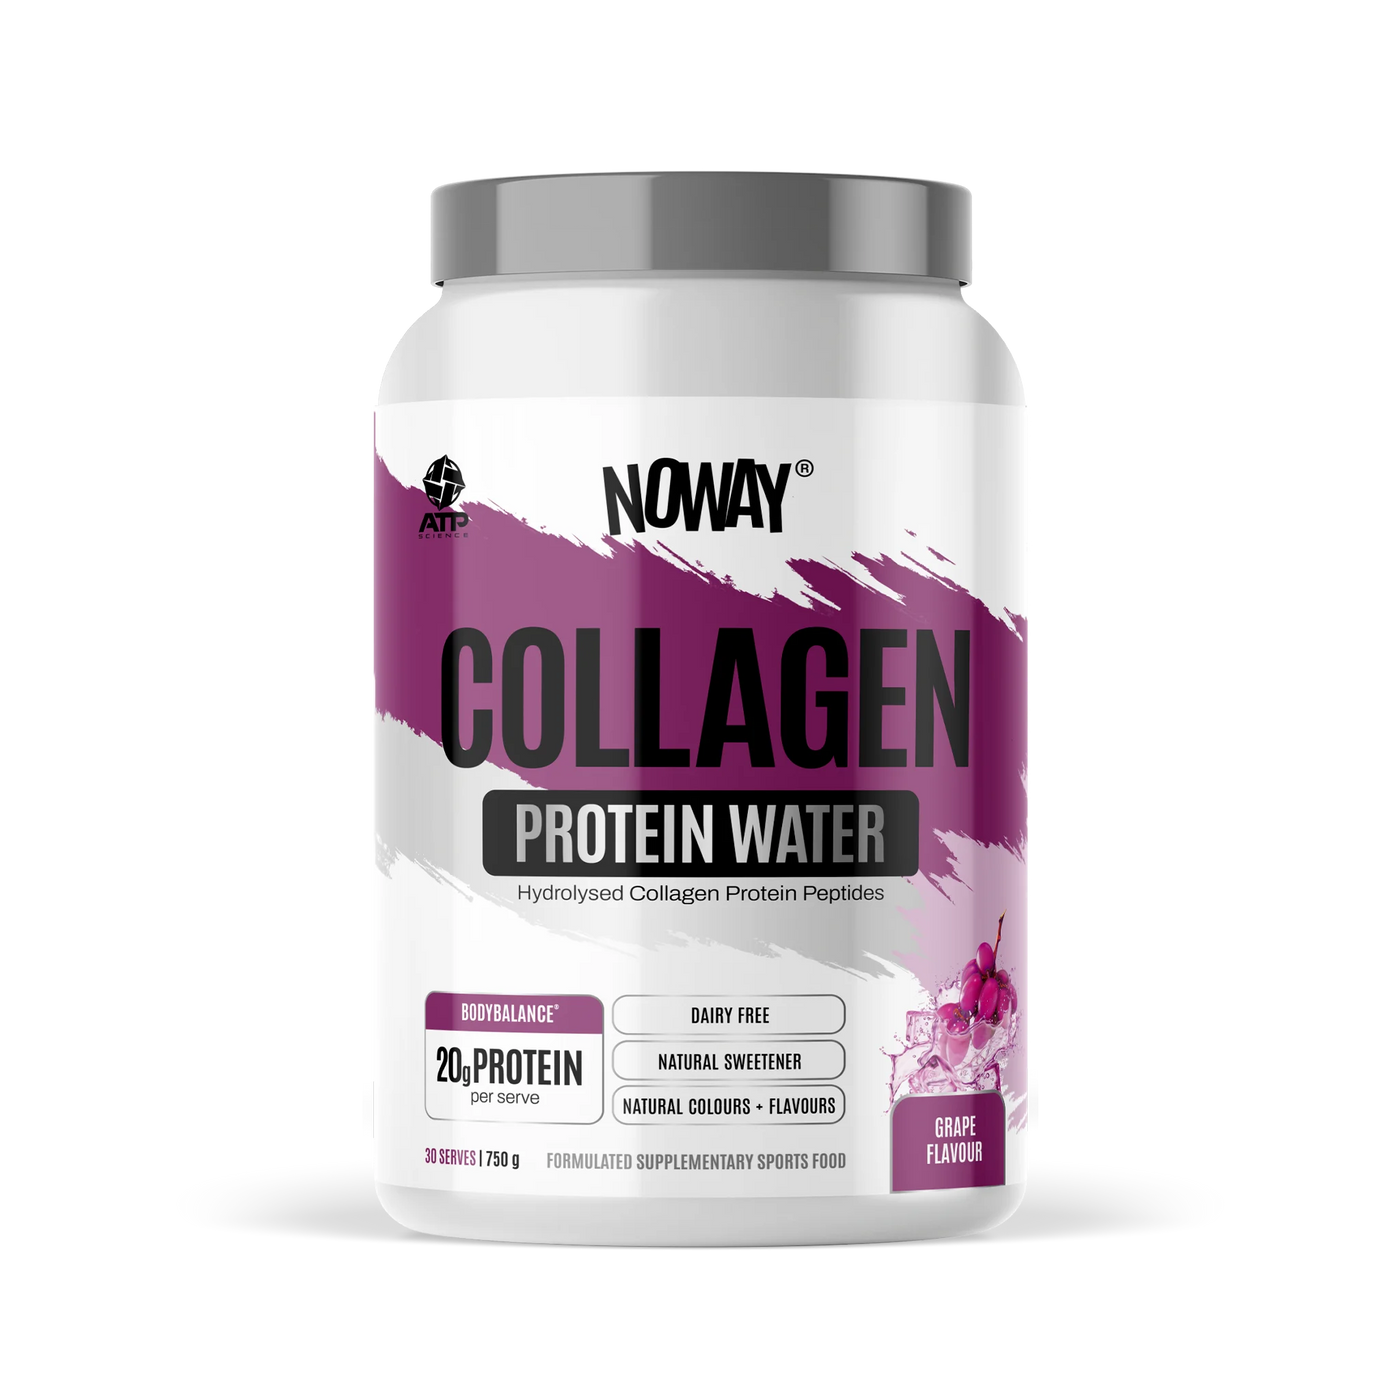 Noway Collagen Protein Water - Grape